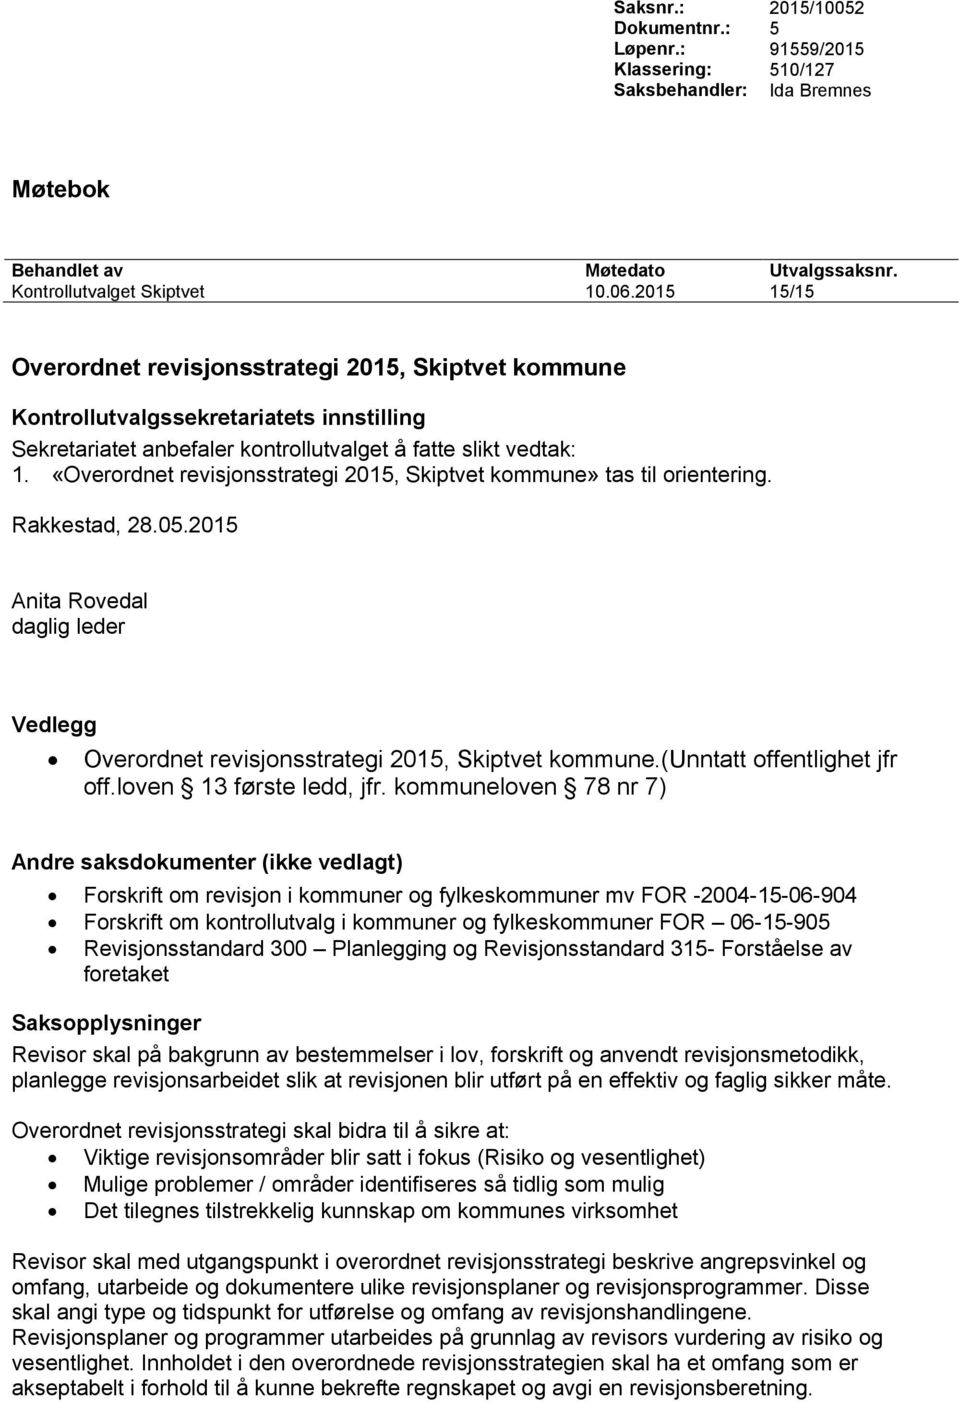 2015 Vedlegg Overordnet revisjonsstrategi 2015, Skiptvet kommune.(unntatt offentlighet jfr off.loven 13 første ledd, jfr.